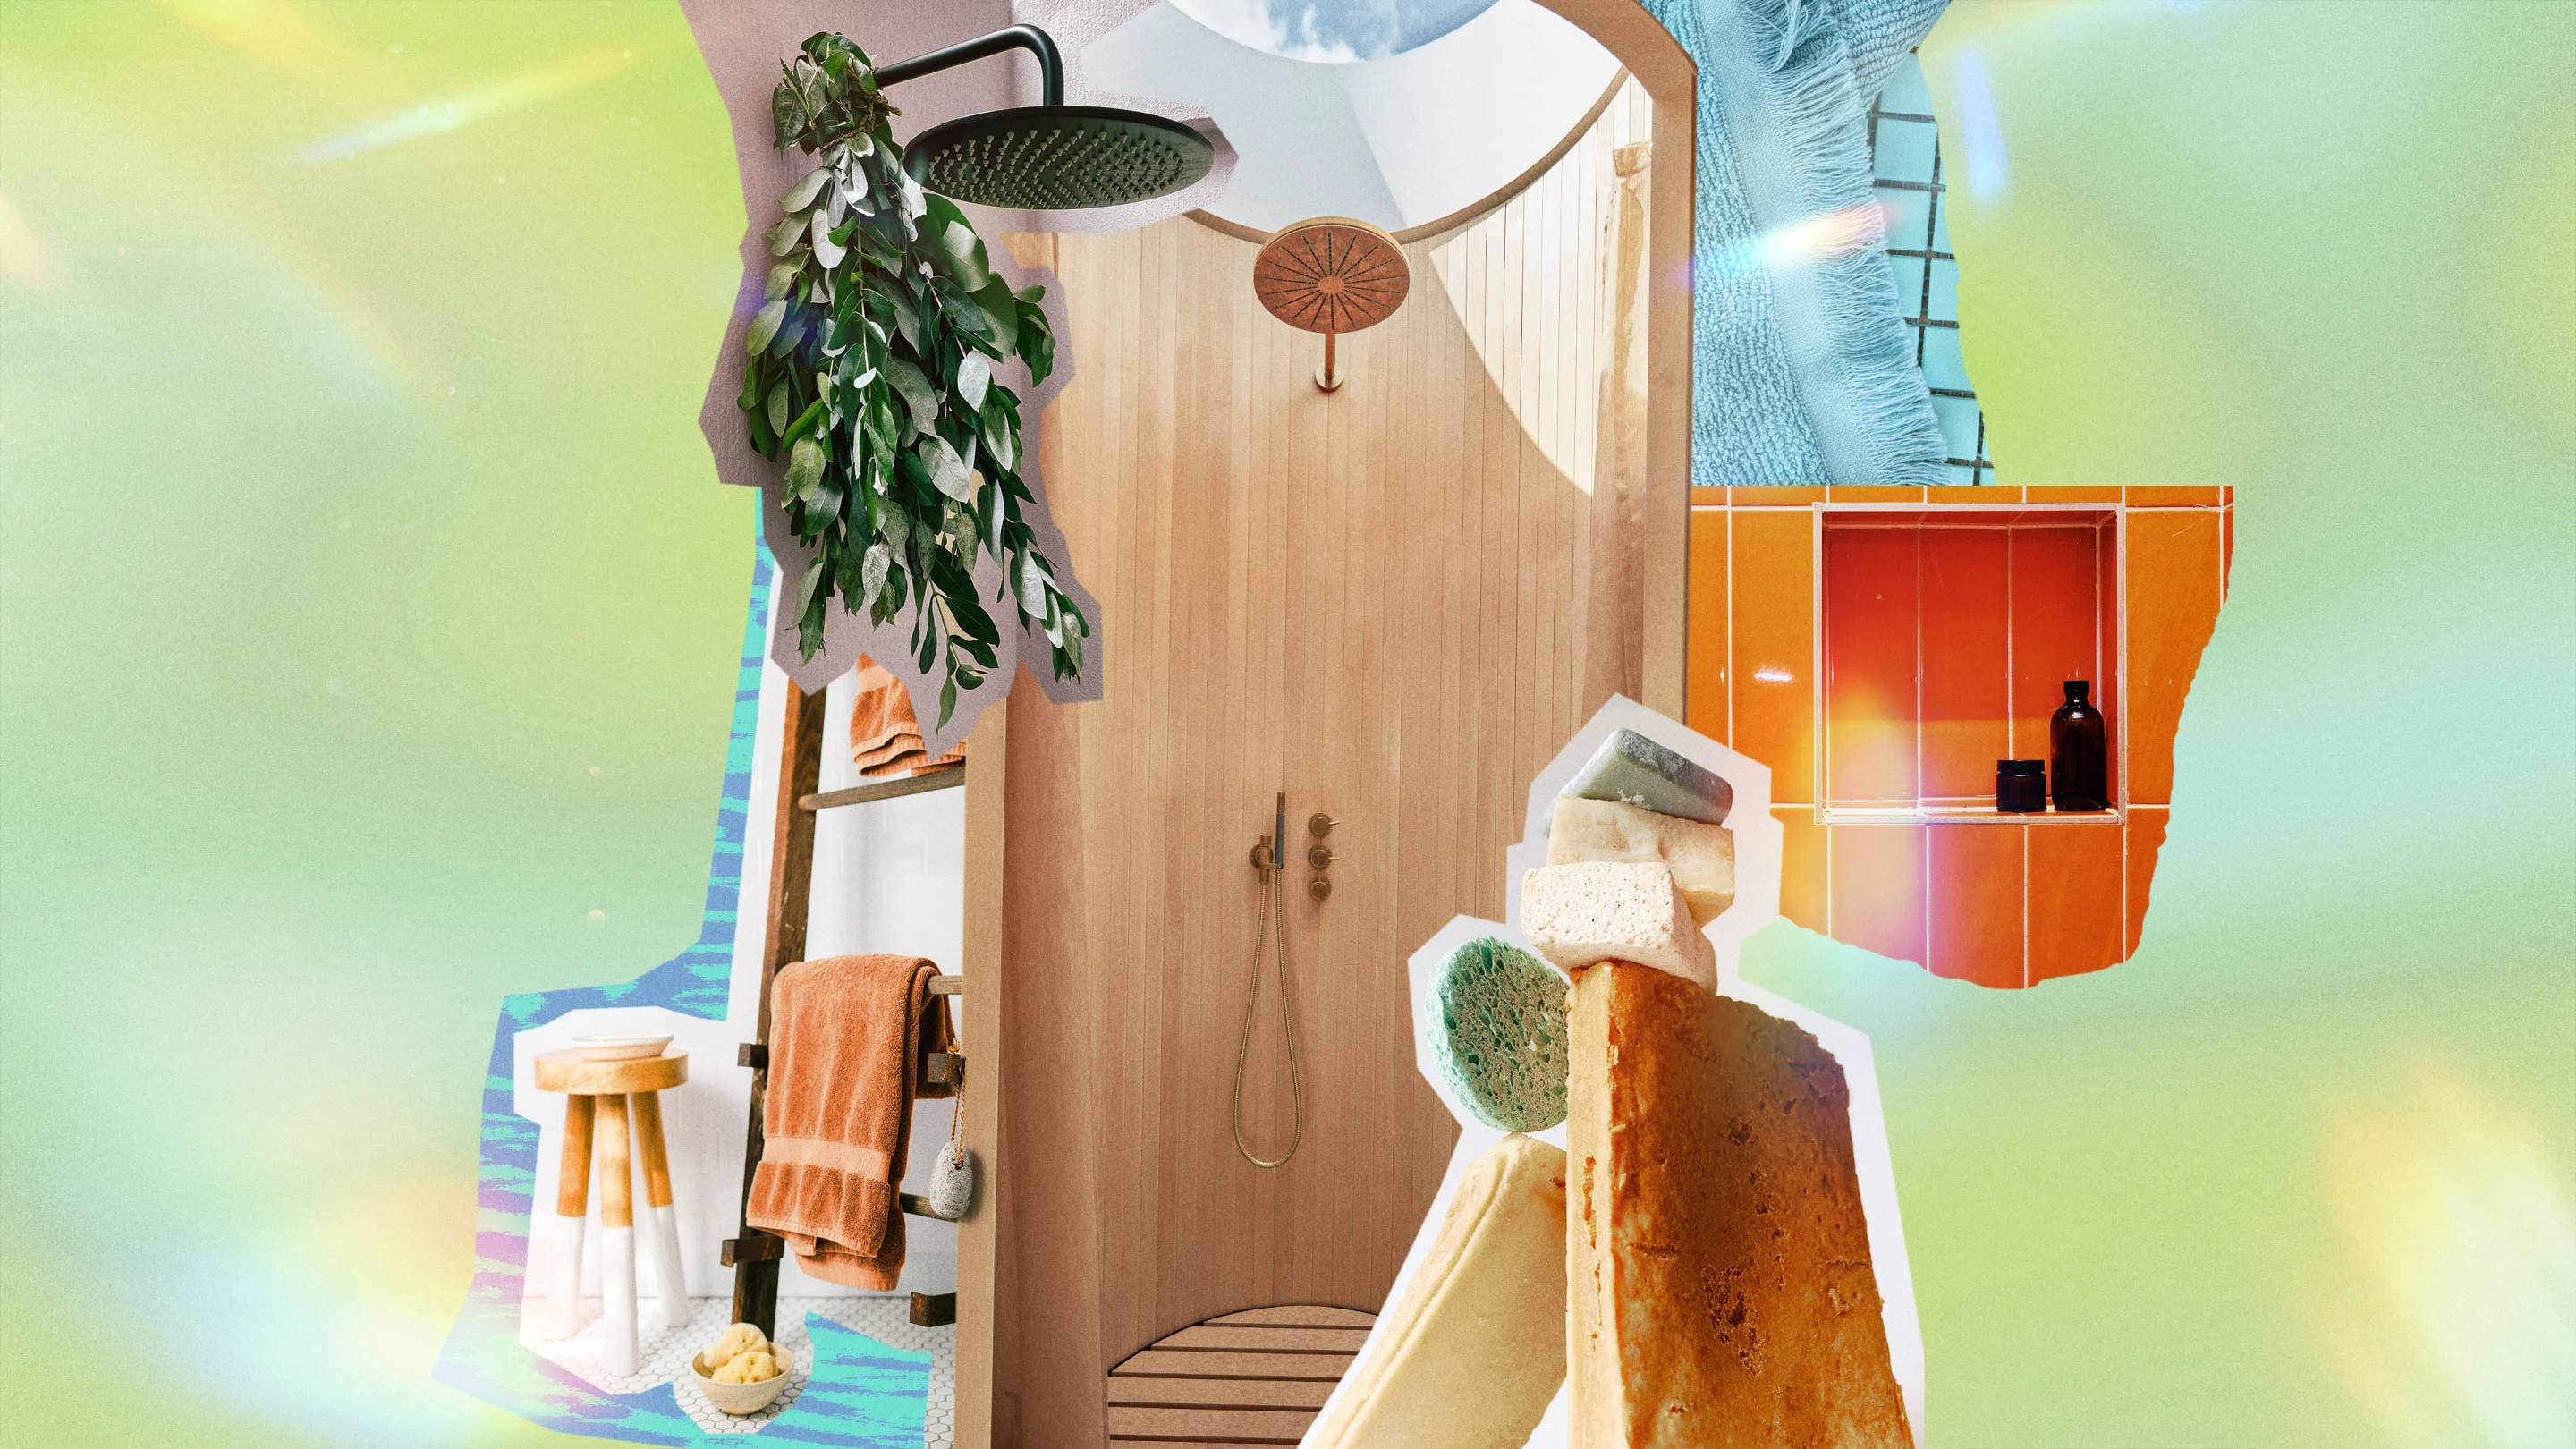 Collage mit Duschthematik mit Eukalyptusblättern, die an einem Duschkopf hängen, verschiedenen Schwämmen, Handtüchern, die an einer Leiter hängen, und Duschprodukten.